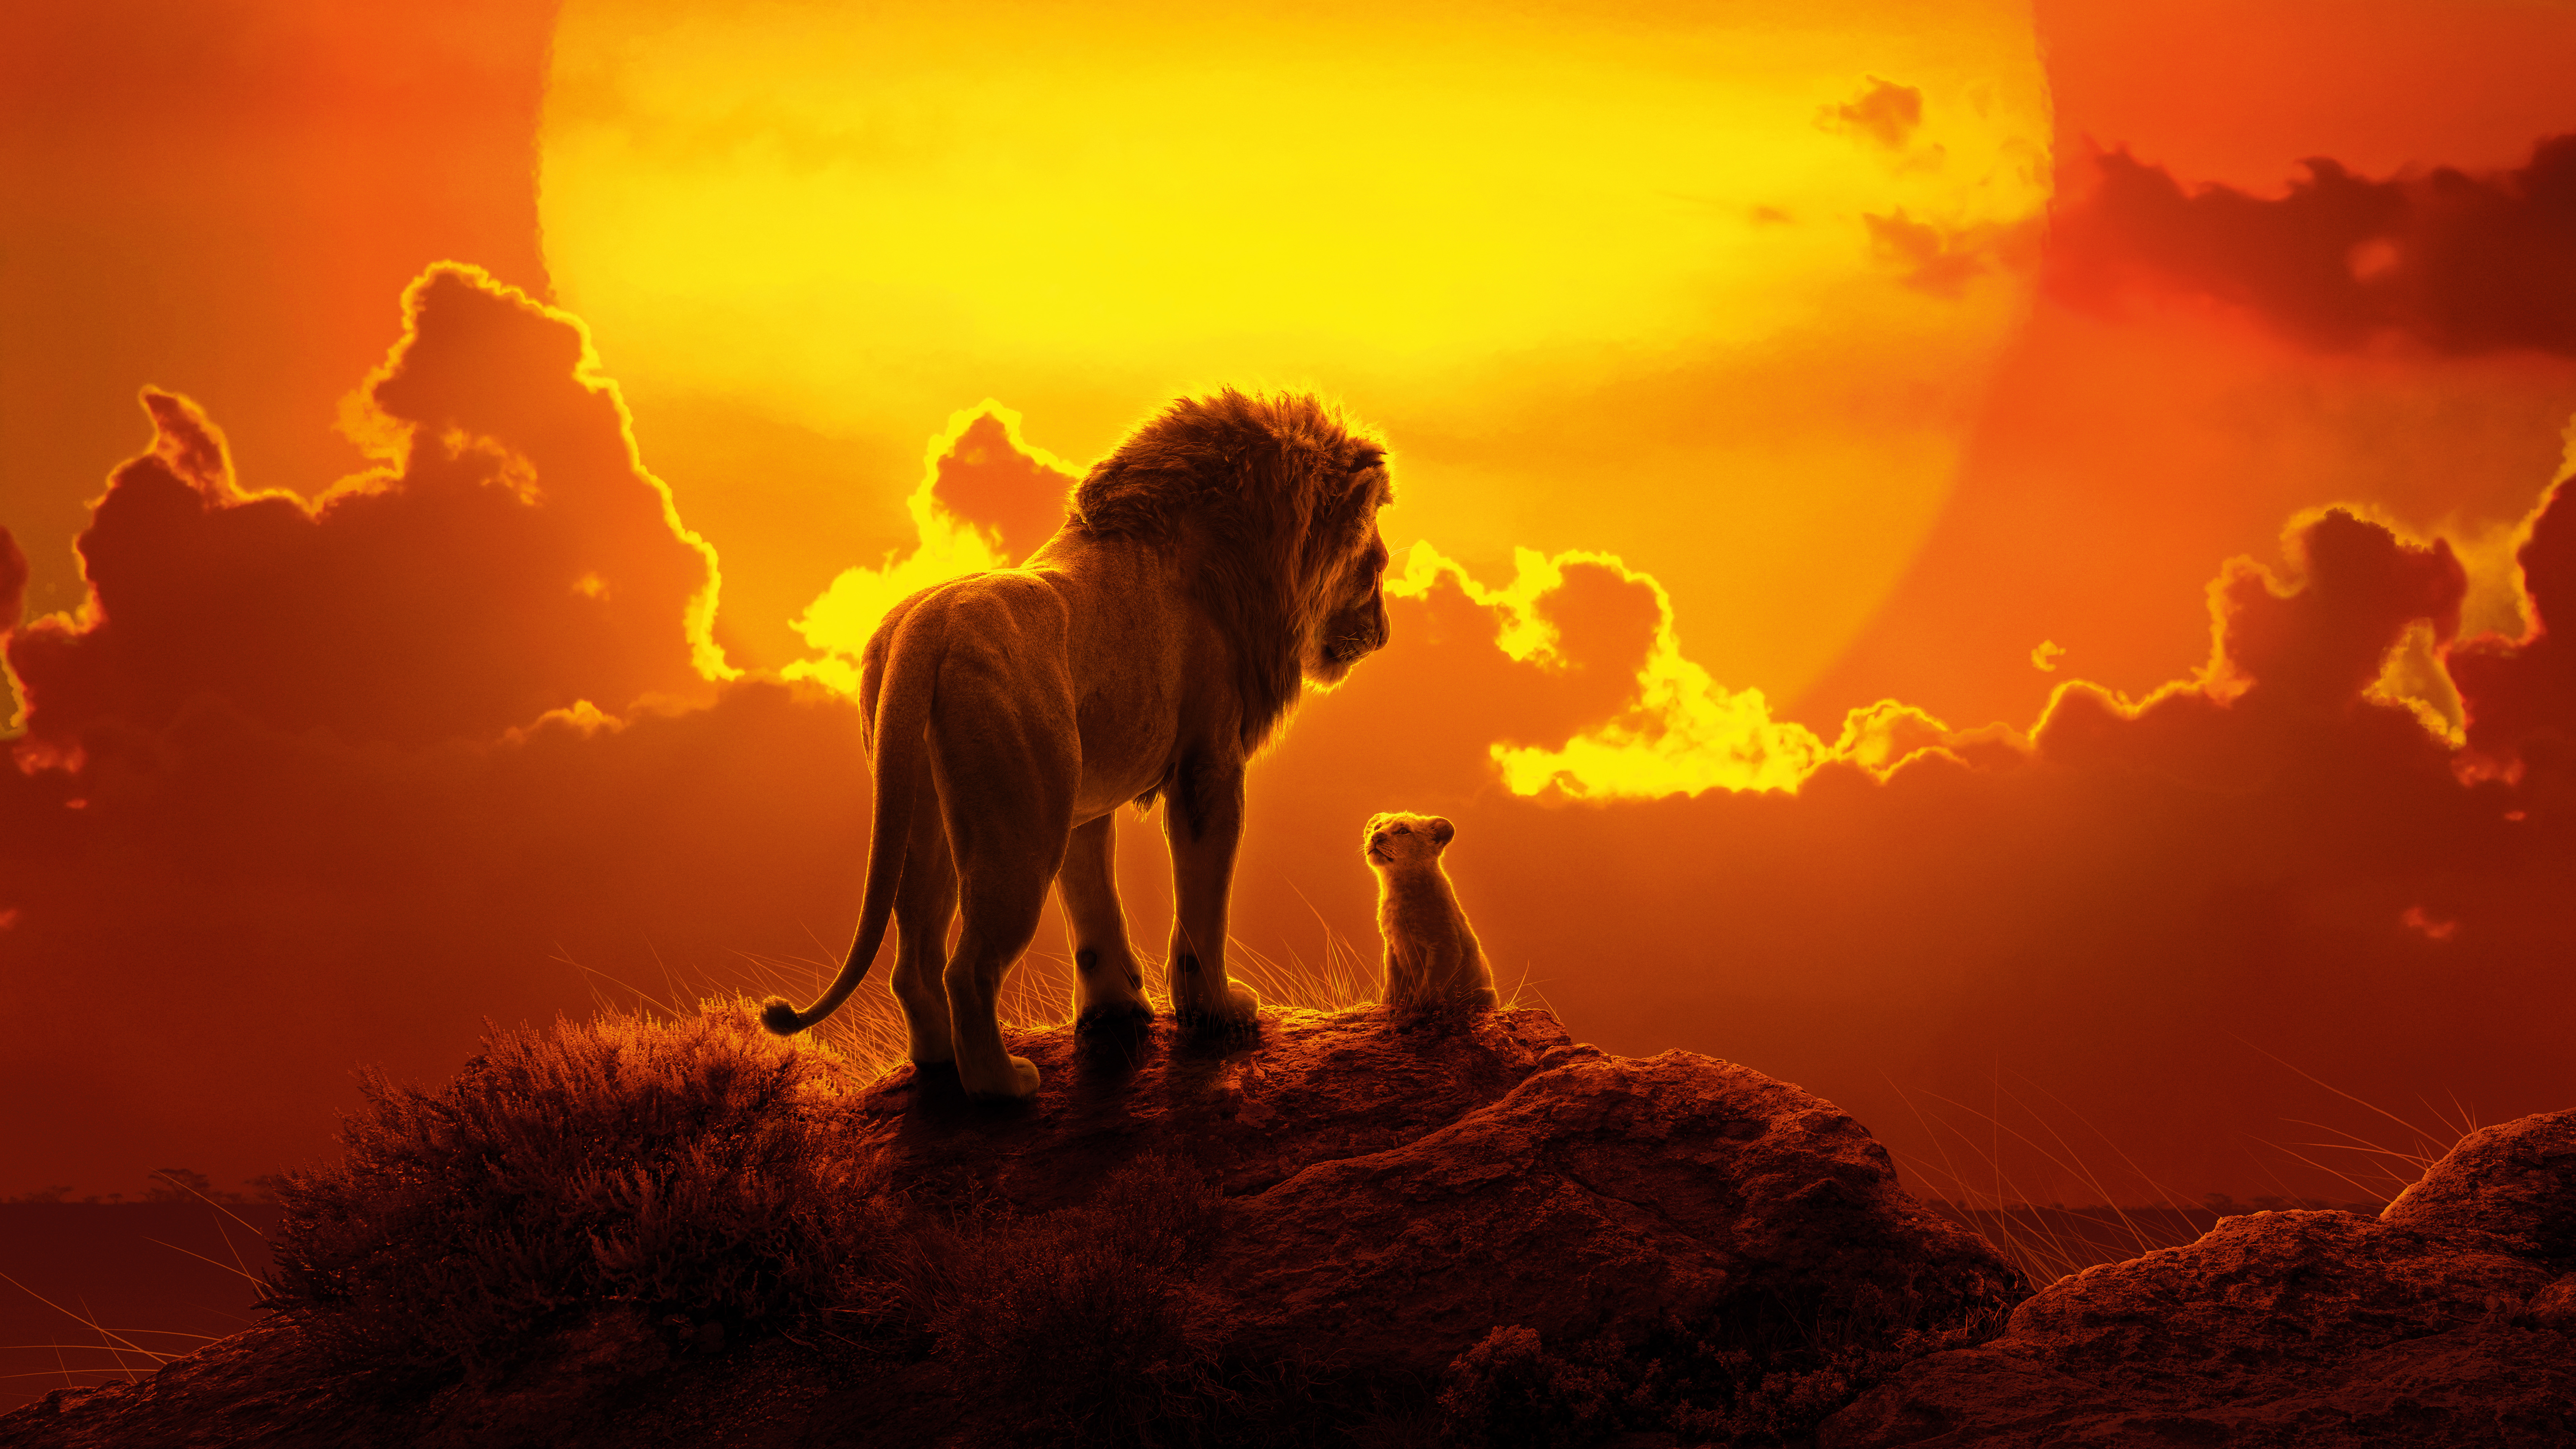 fond d'écran du roi lion,faune,lion,félidés,ciel,gros chats